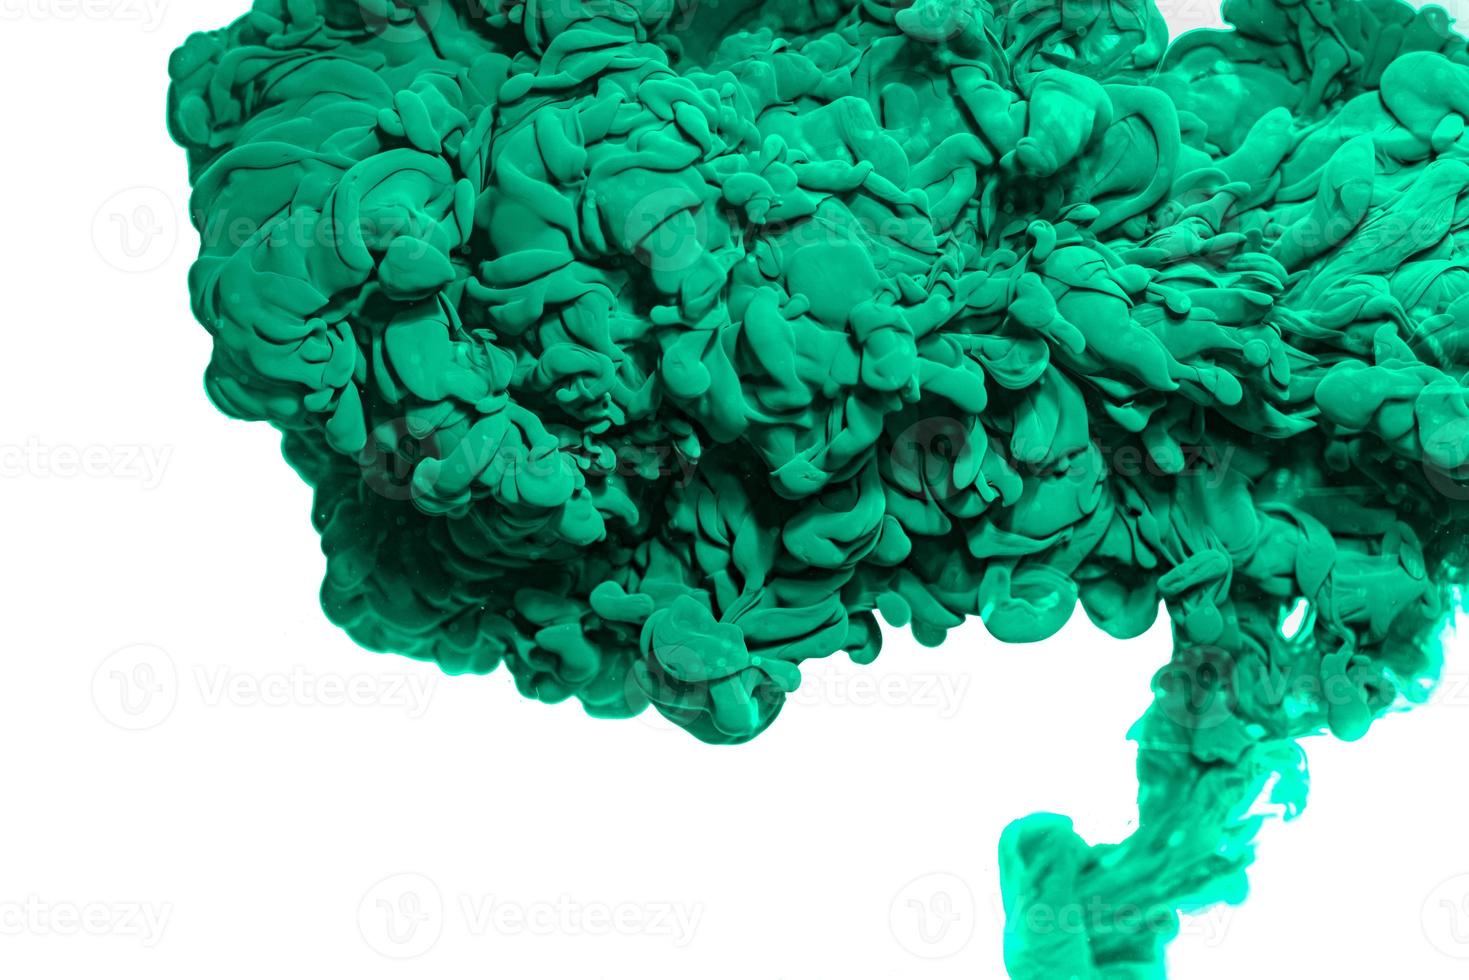 Mực acrylic xanh lá cây: Tạo ra bức tranh tuyệt đẹp với mực acrylic xanh lá cây. Sự đậm nét, tươi sáng của màu sẽ khiến bức tranh của bạn nổi bật và tươi mới hơn bao giờ hết.